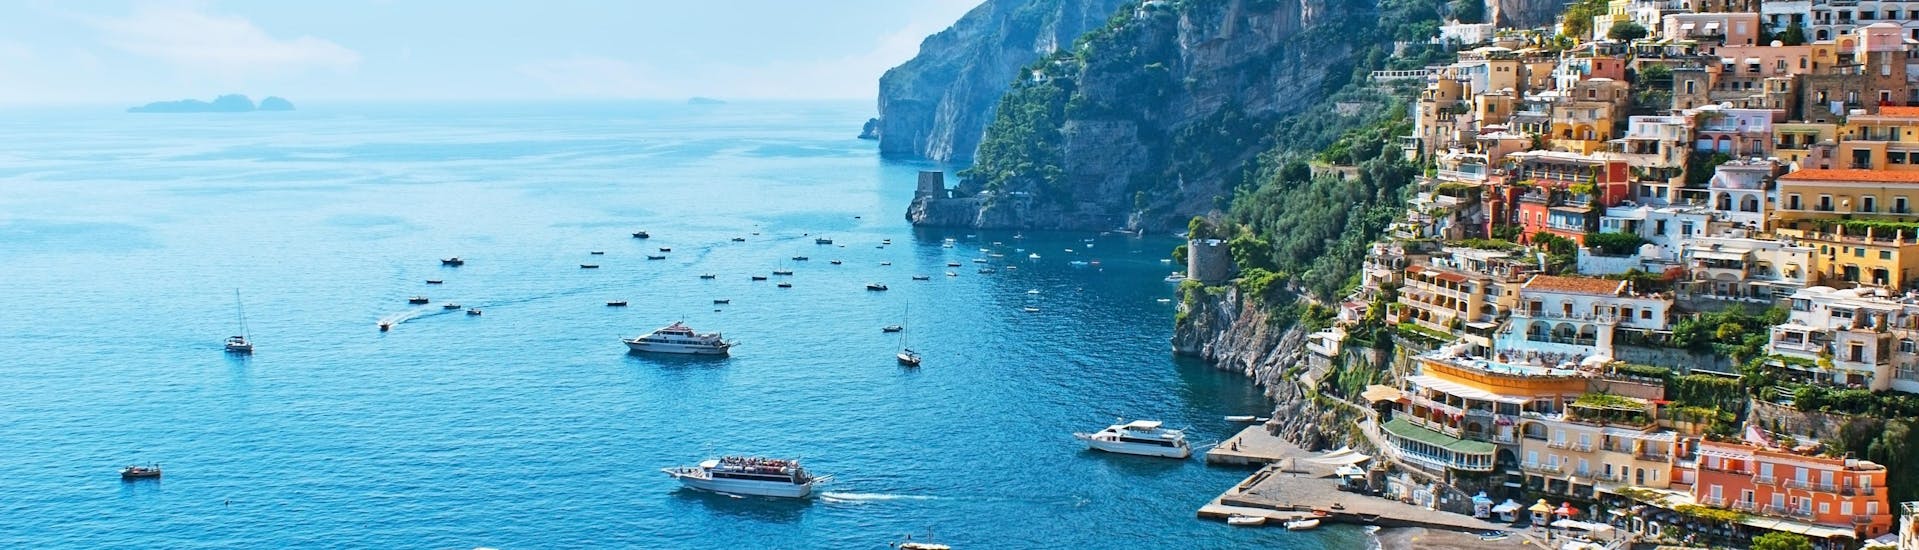 Vista della città costiera di Capri durante una giornata di sole in estate. 